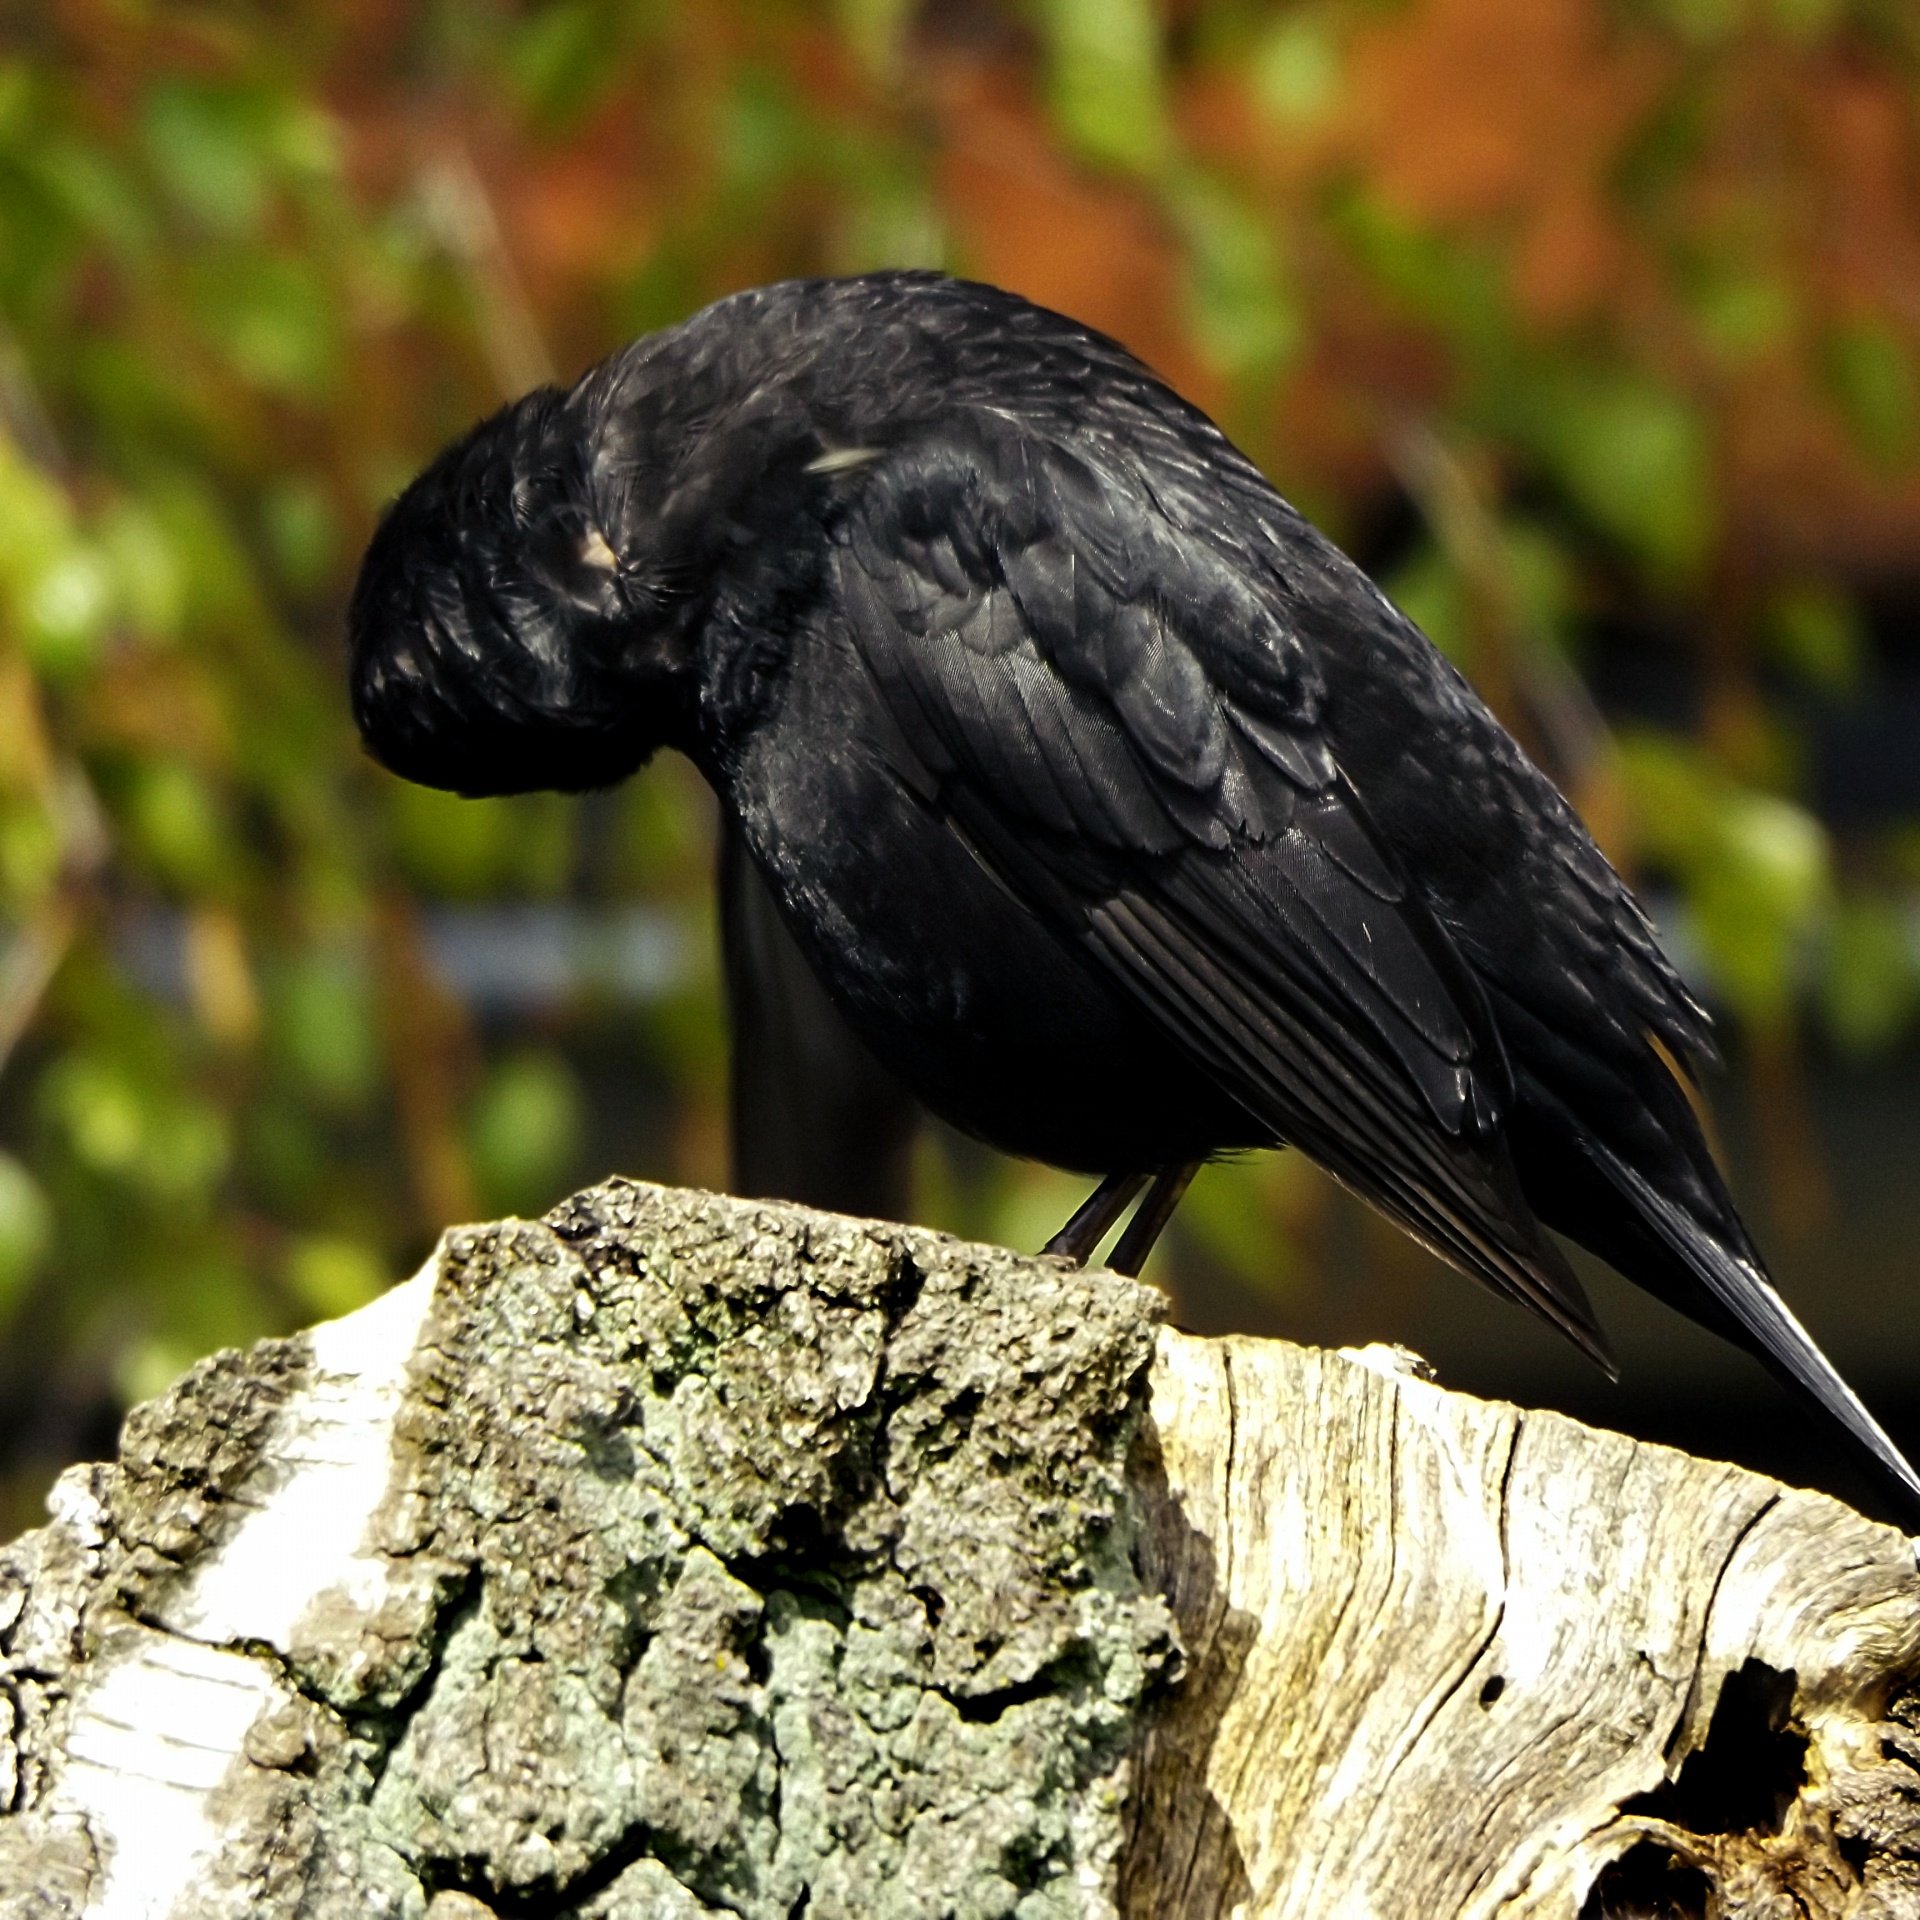 Черная птичка. Черная птичка с черным клювом. Черная птица с длинным черным клювом. Небольшая черная птичка с черным клювом.